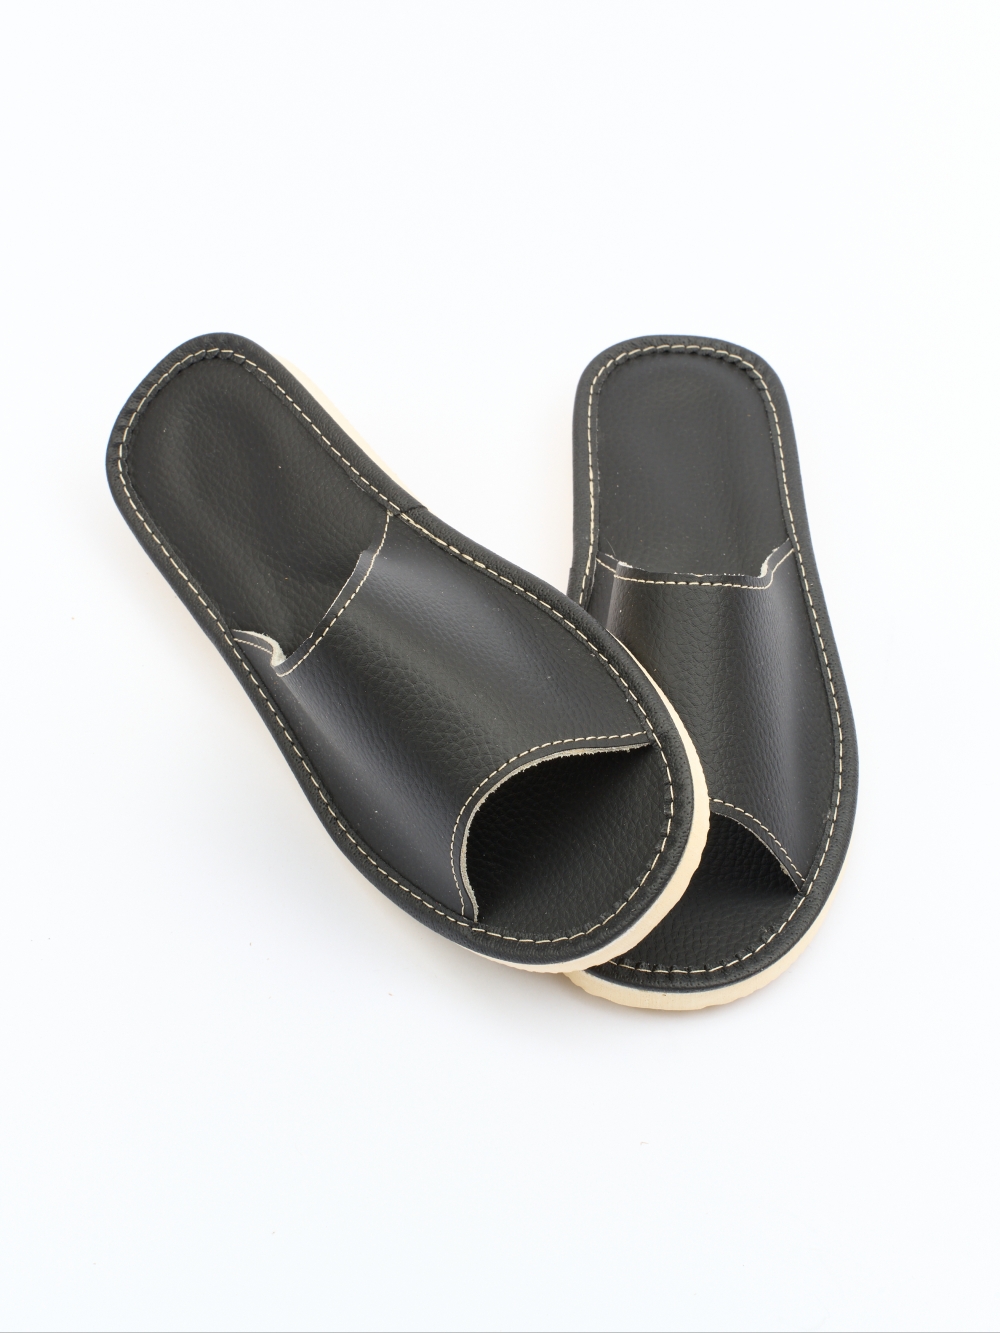 Тапочки кожаные открытые женские шевские 22А черный гранит (черные) размер 36